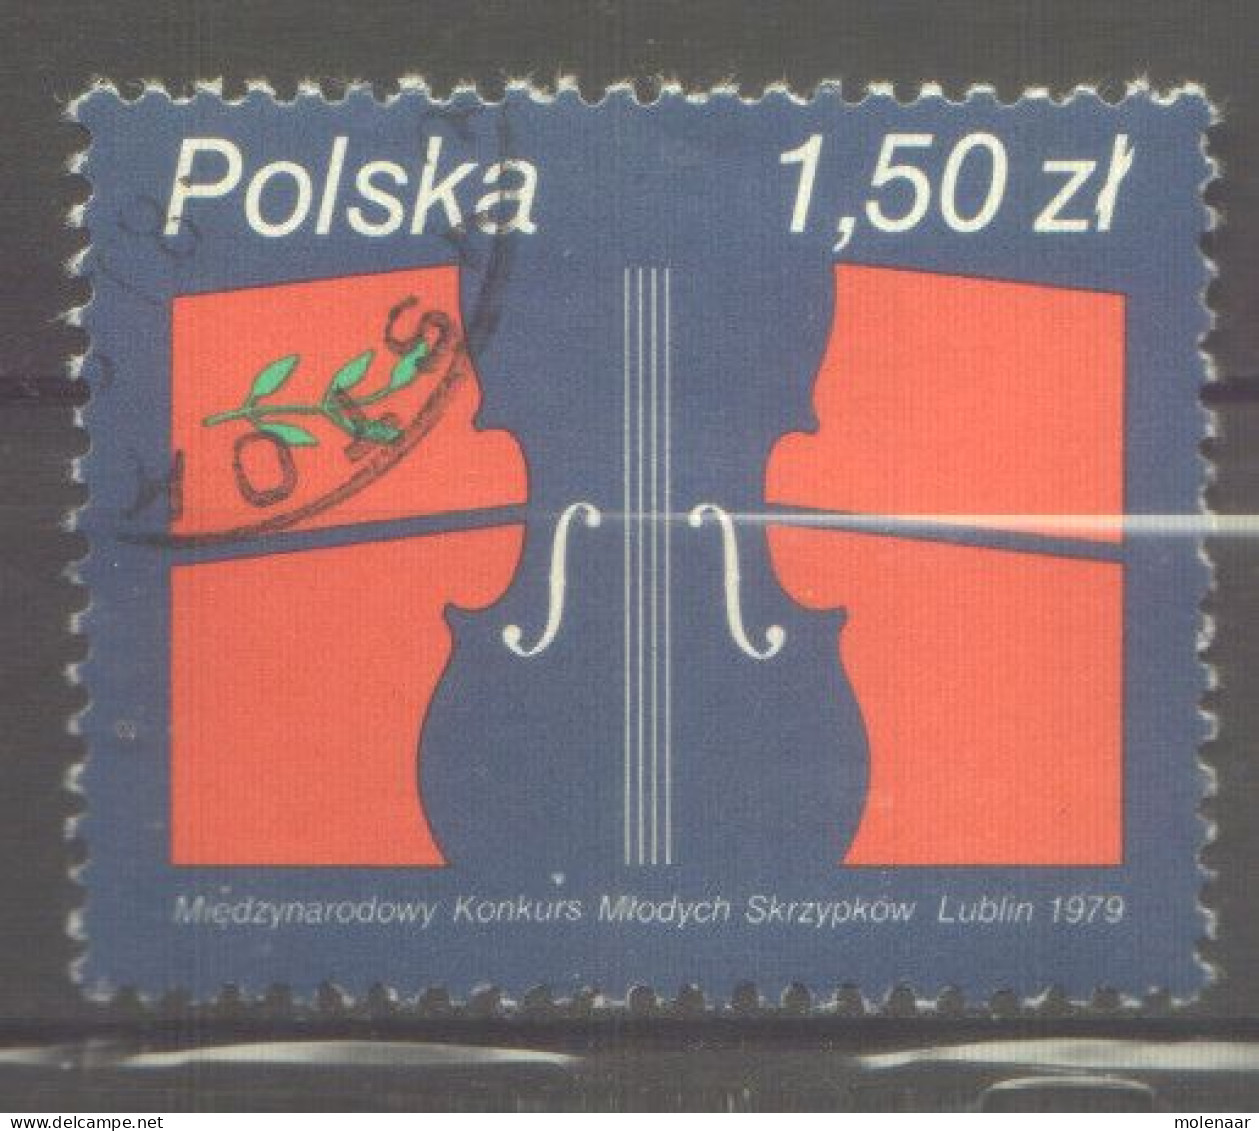 Postzegels > Europa > Polen > 1944-.... Republiek > 1971-80 > Gebruikt  2643 (12174) - Usati